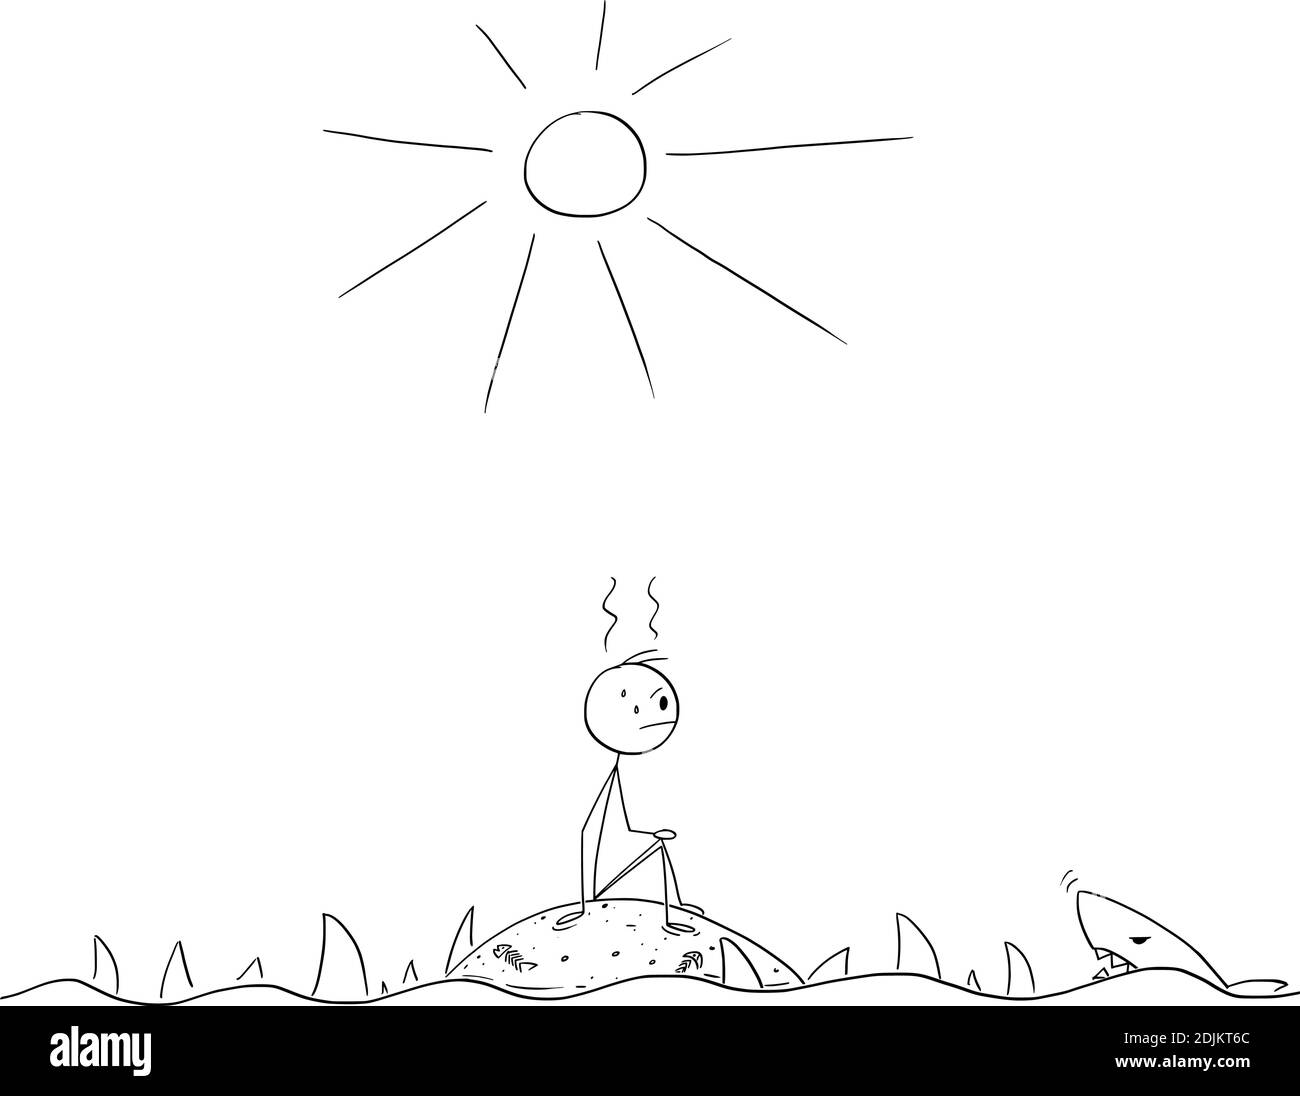 Vektor-Cartoon-Stick Figur Abbildung frustriert Mann allein auf kleinen leeren einsamen Insel von Haien umgeben sitzen. Stock Vektor